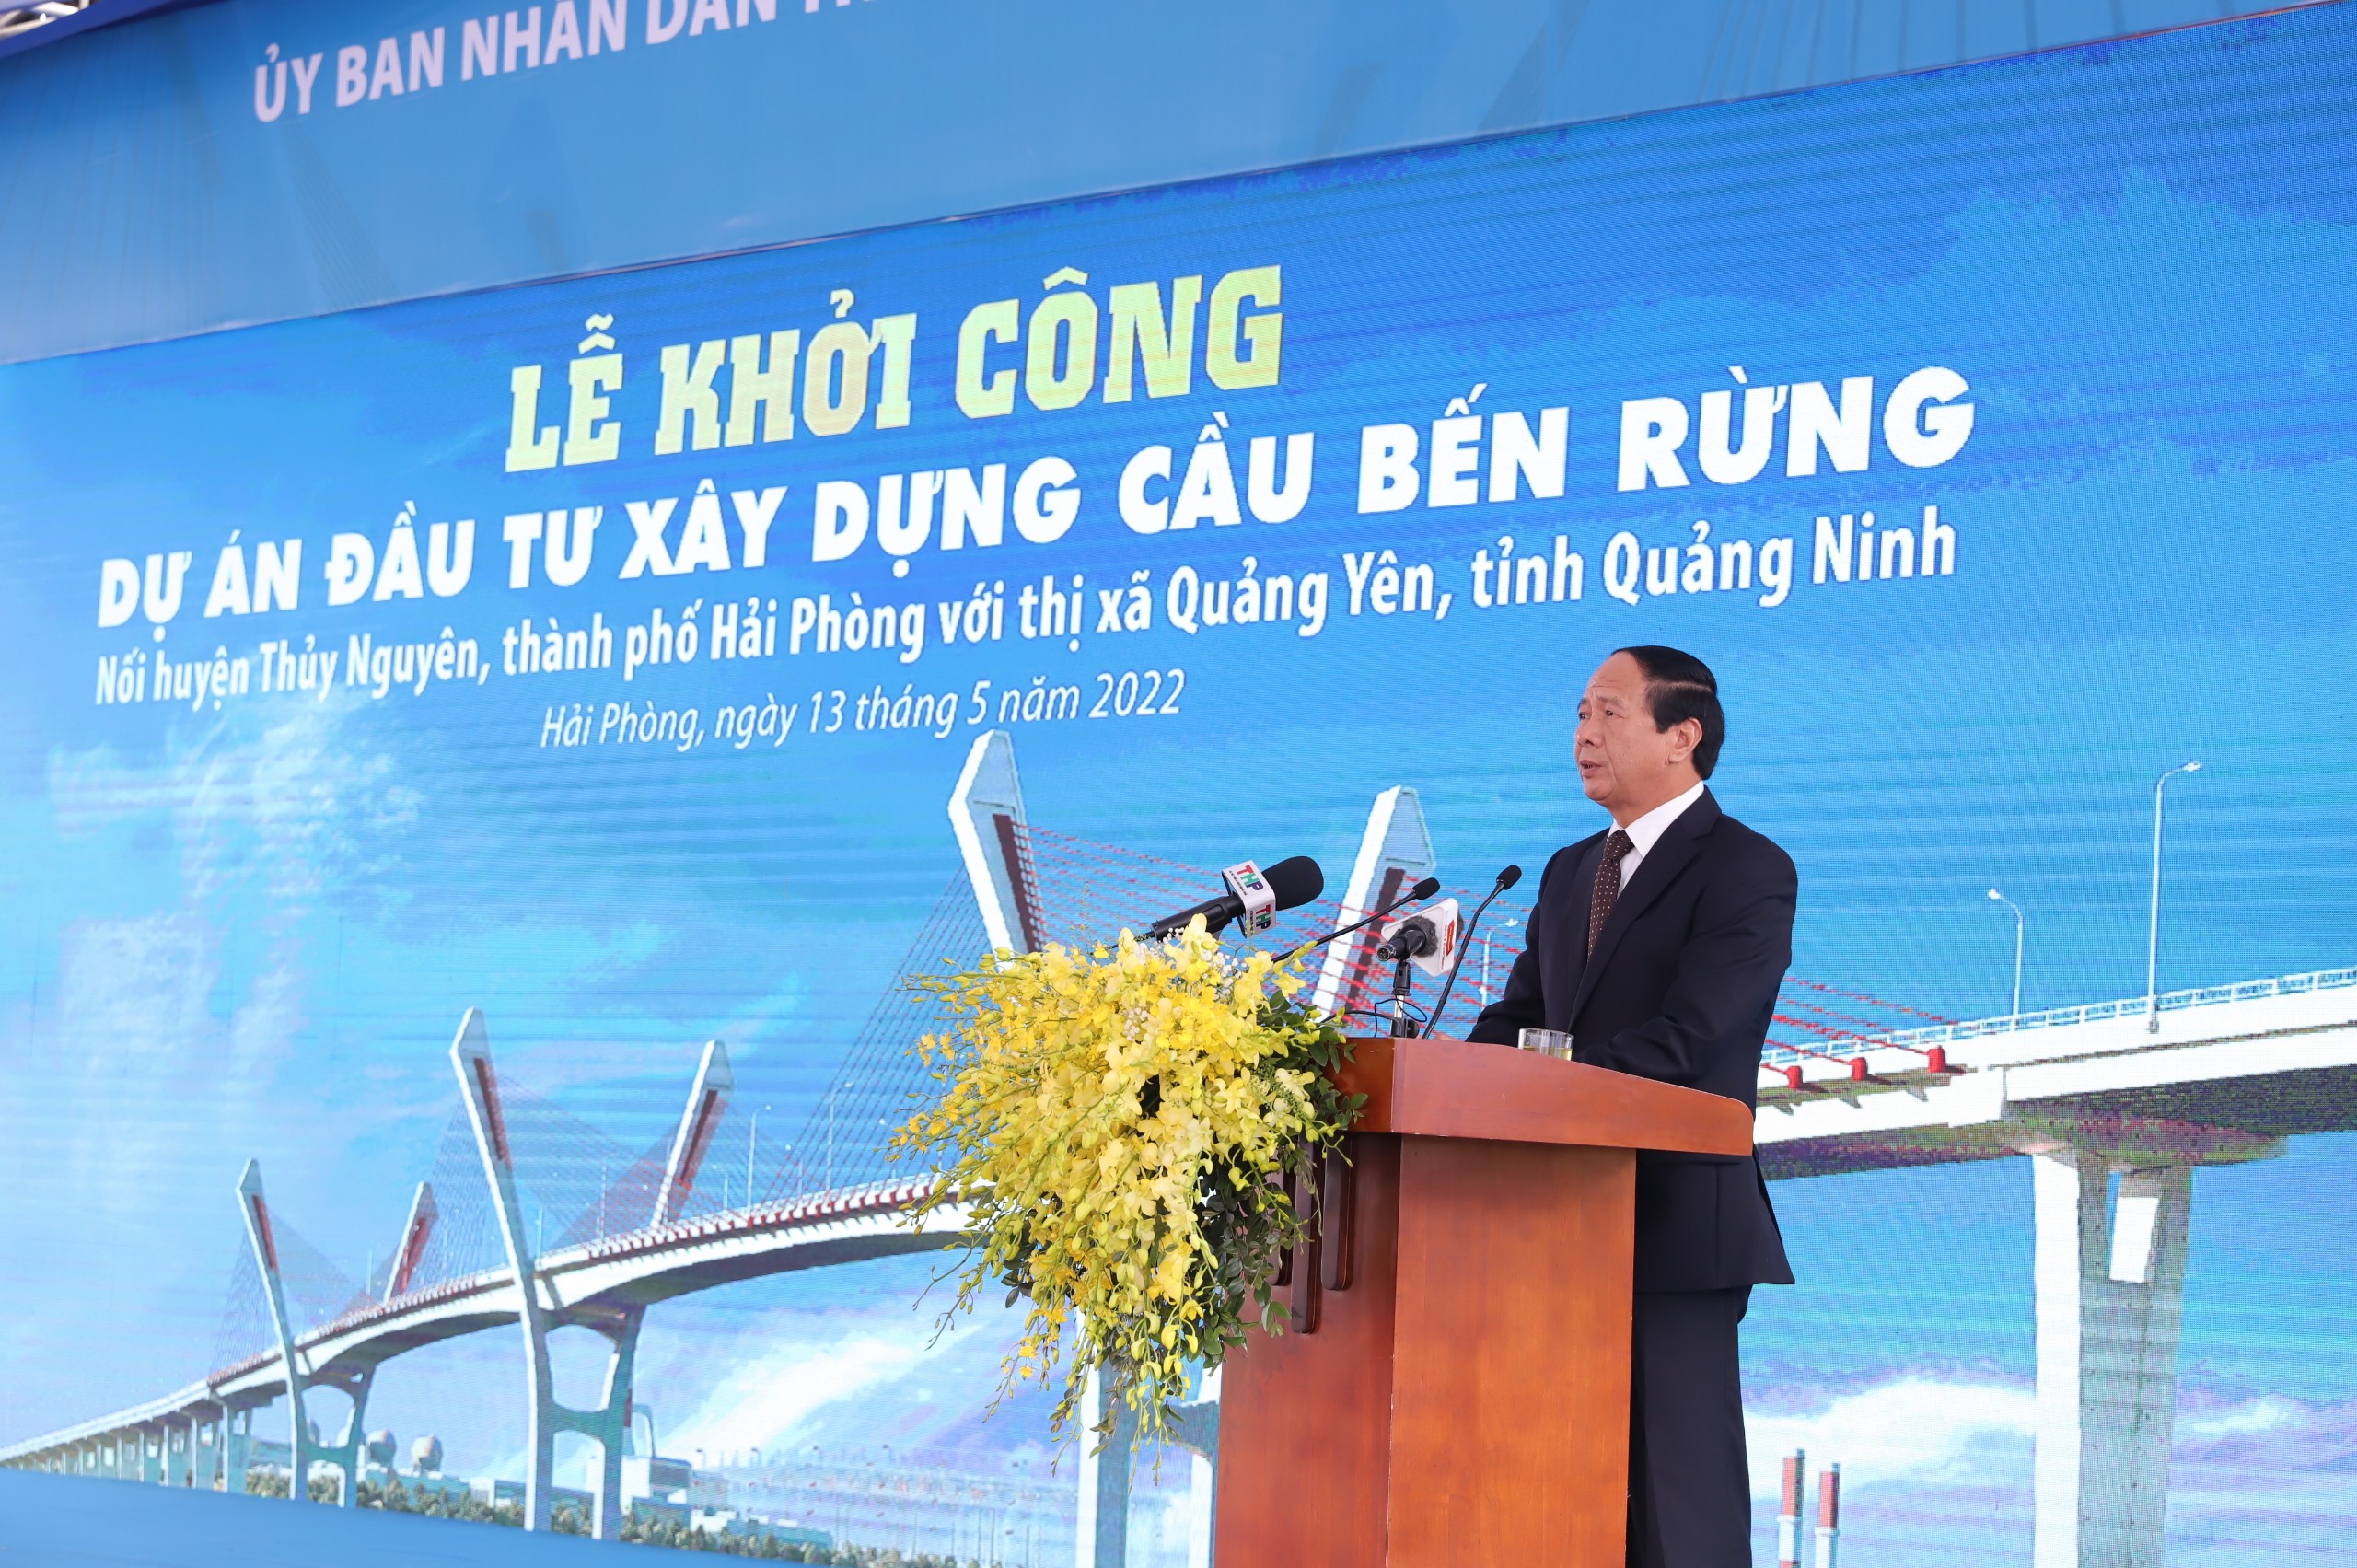 Phó Thủ tướng Lê Văn Thành phát biểu tại Lễ khởi công sáng ngày 13.5